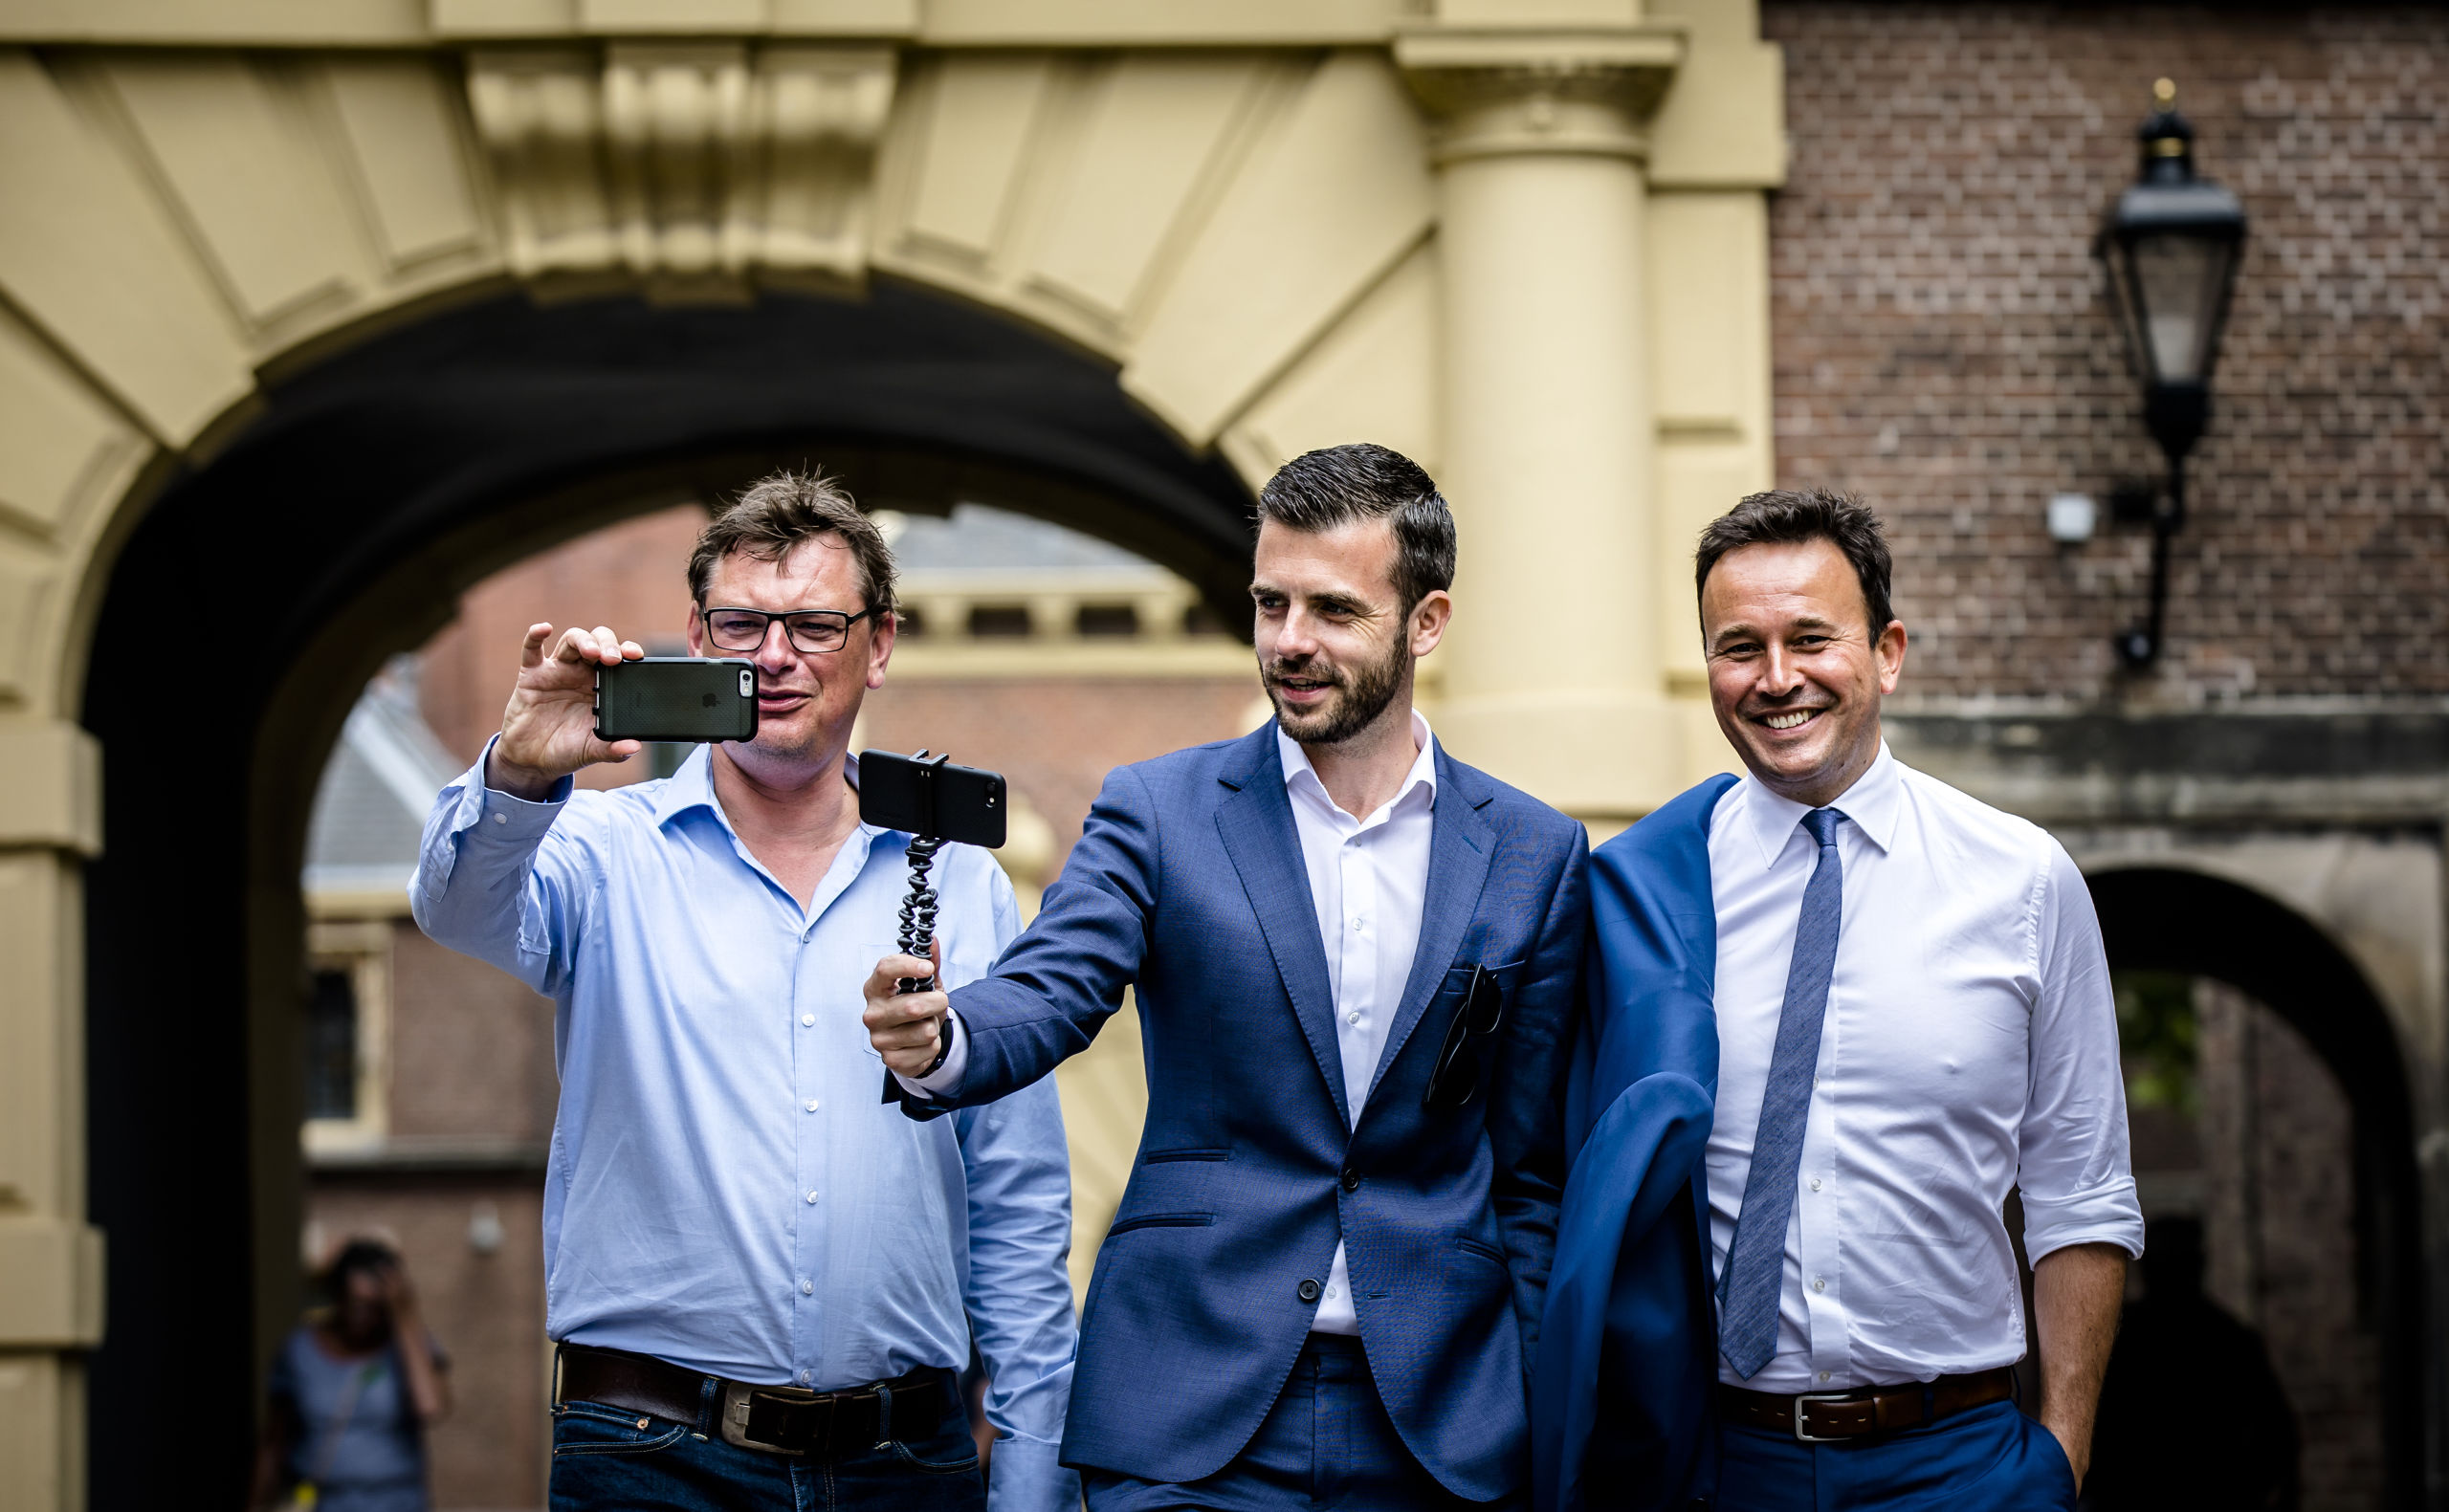 NOS formatievloggers Joost Vullings, Vincent Rietbergen en Xander van der Wulp poseren op het Binnenhof. ANP BART MAAT